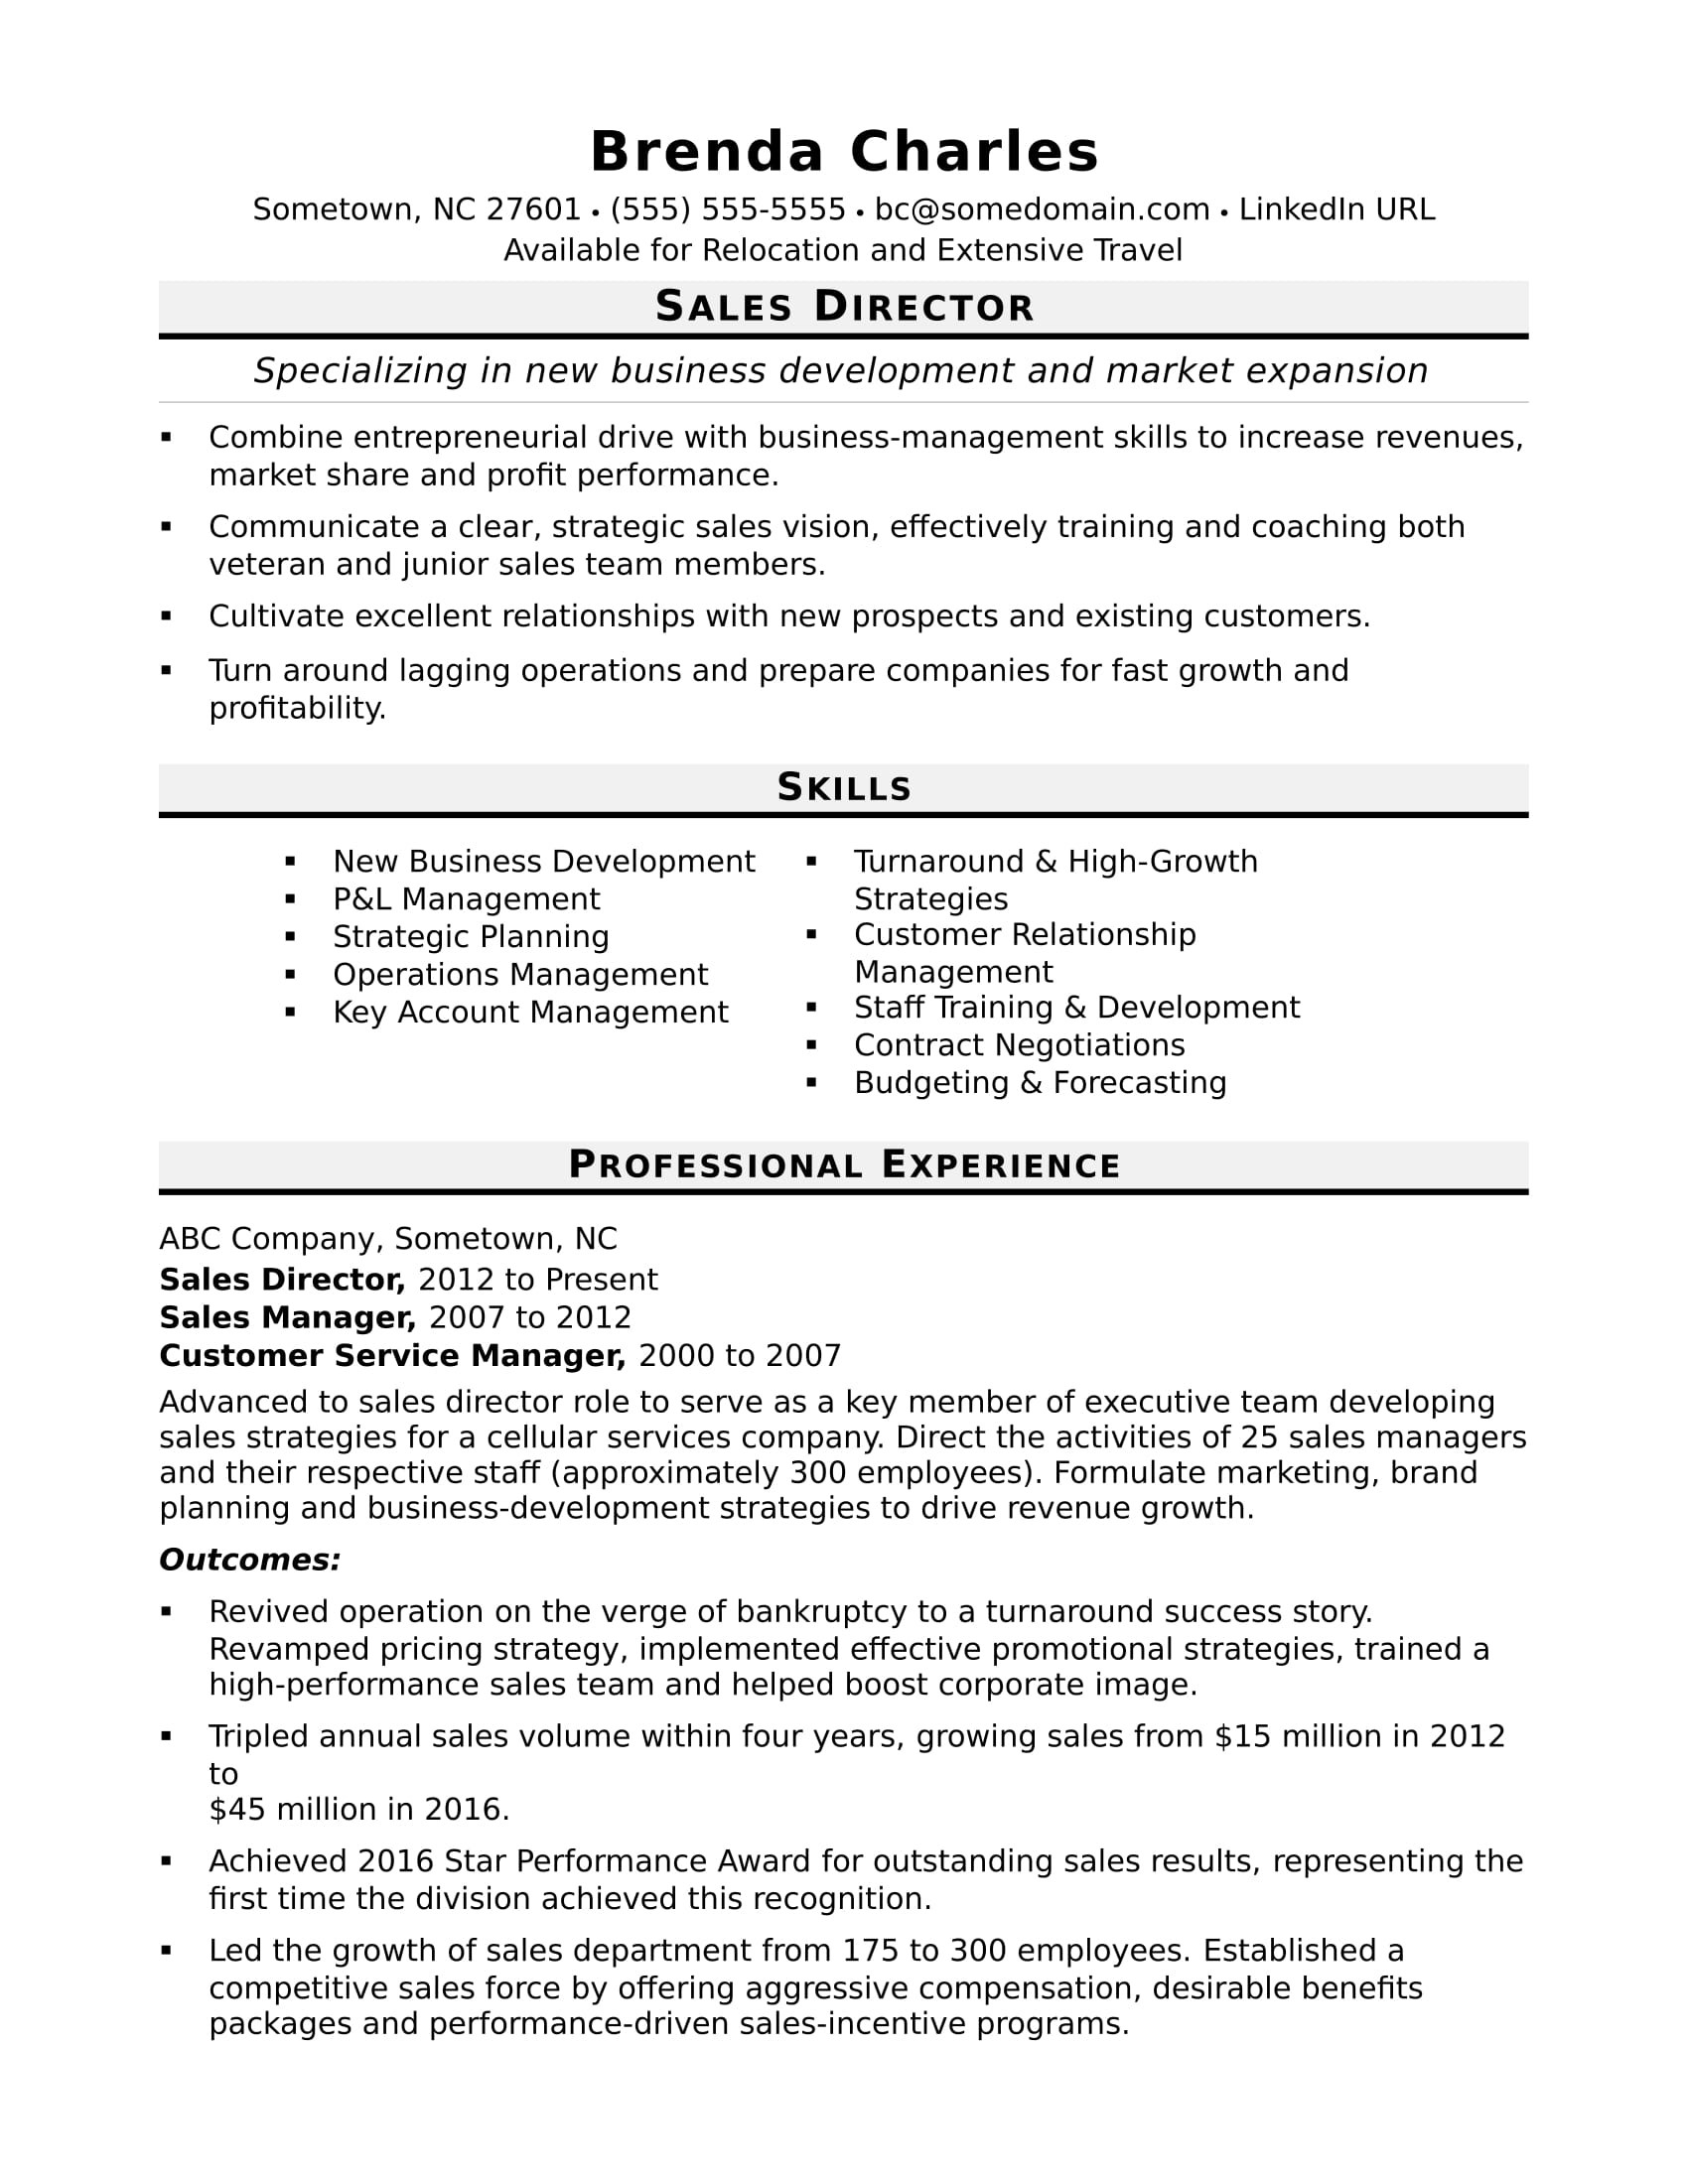 Sales Manager Job Description Resume Sample Sales Director Resume Sample Monster.com